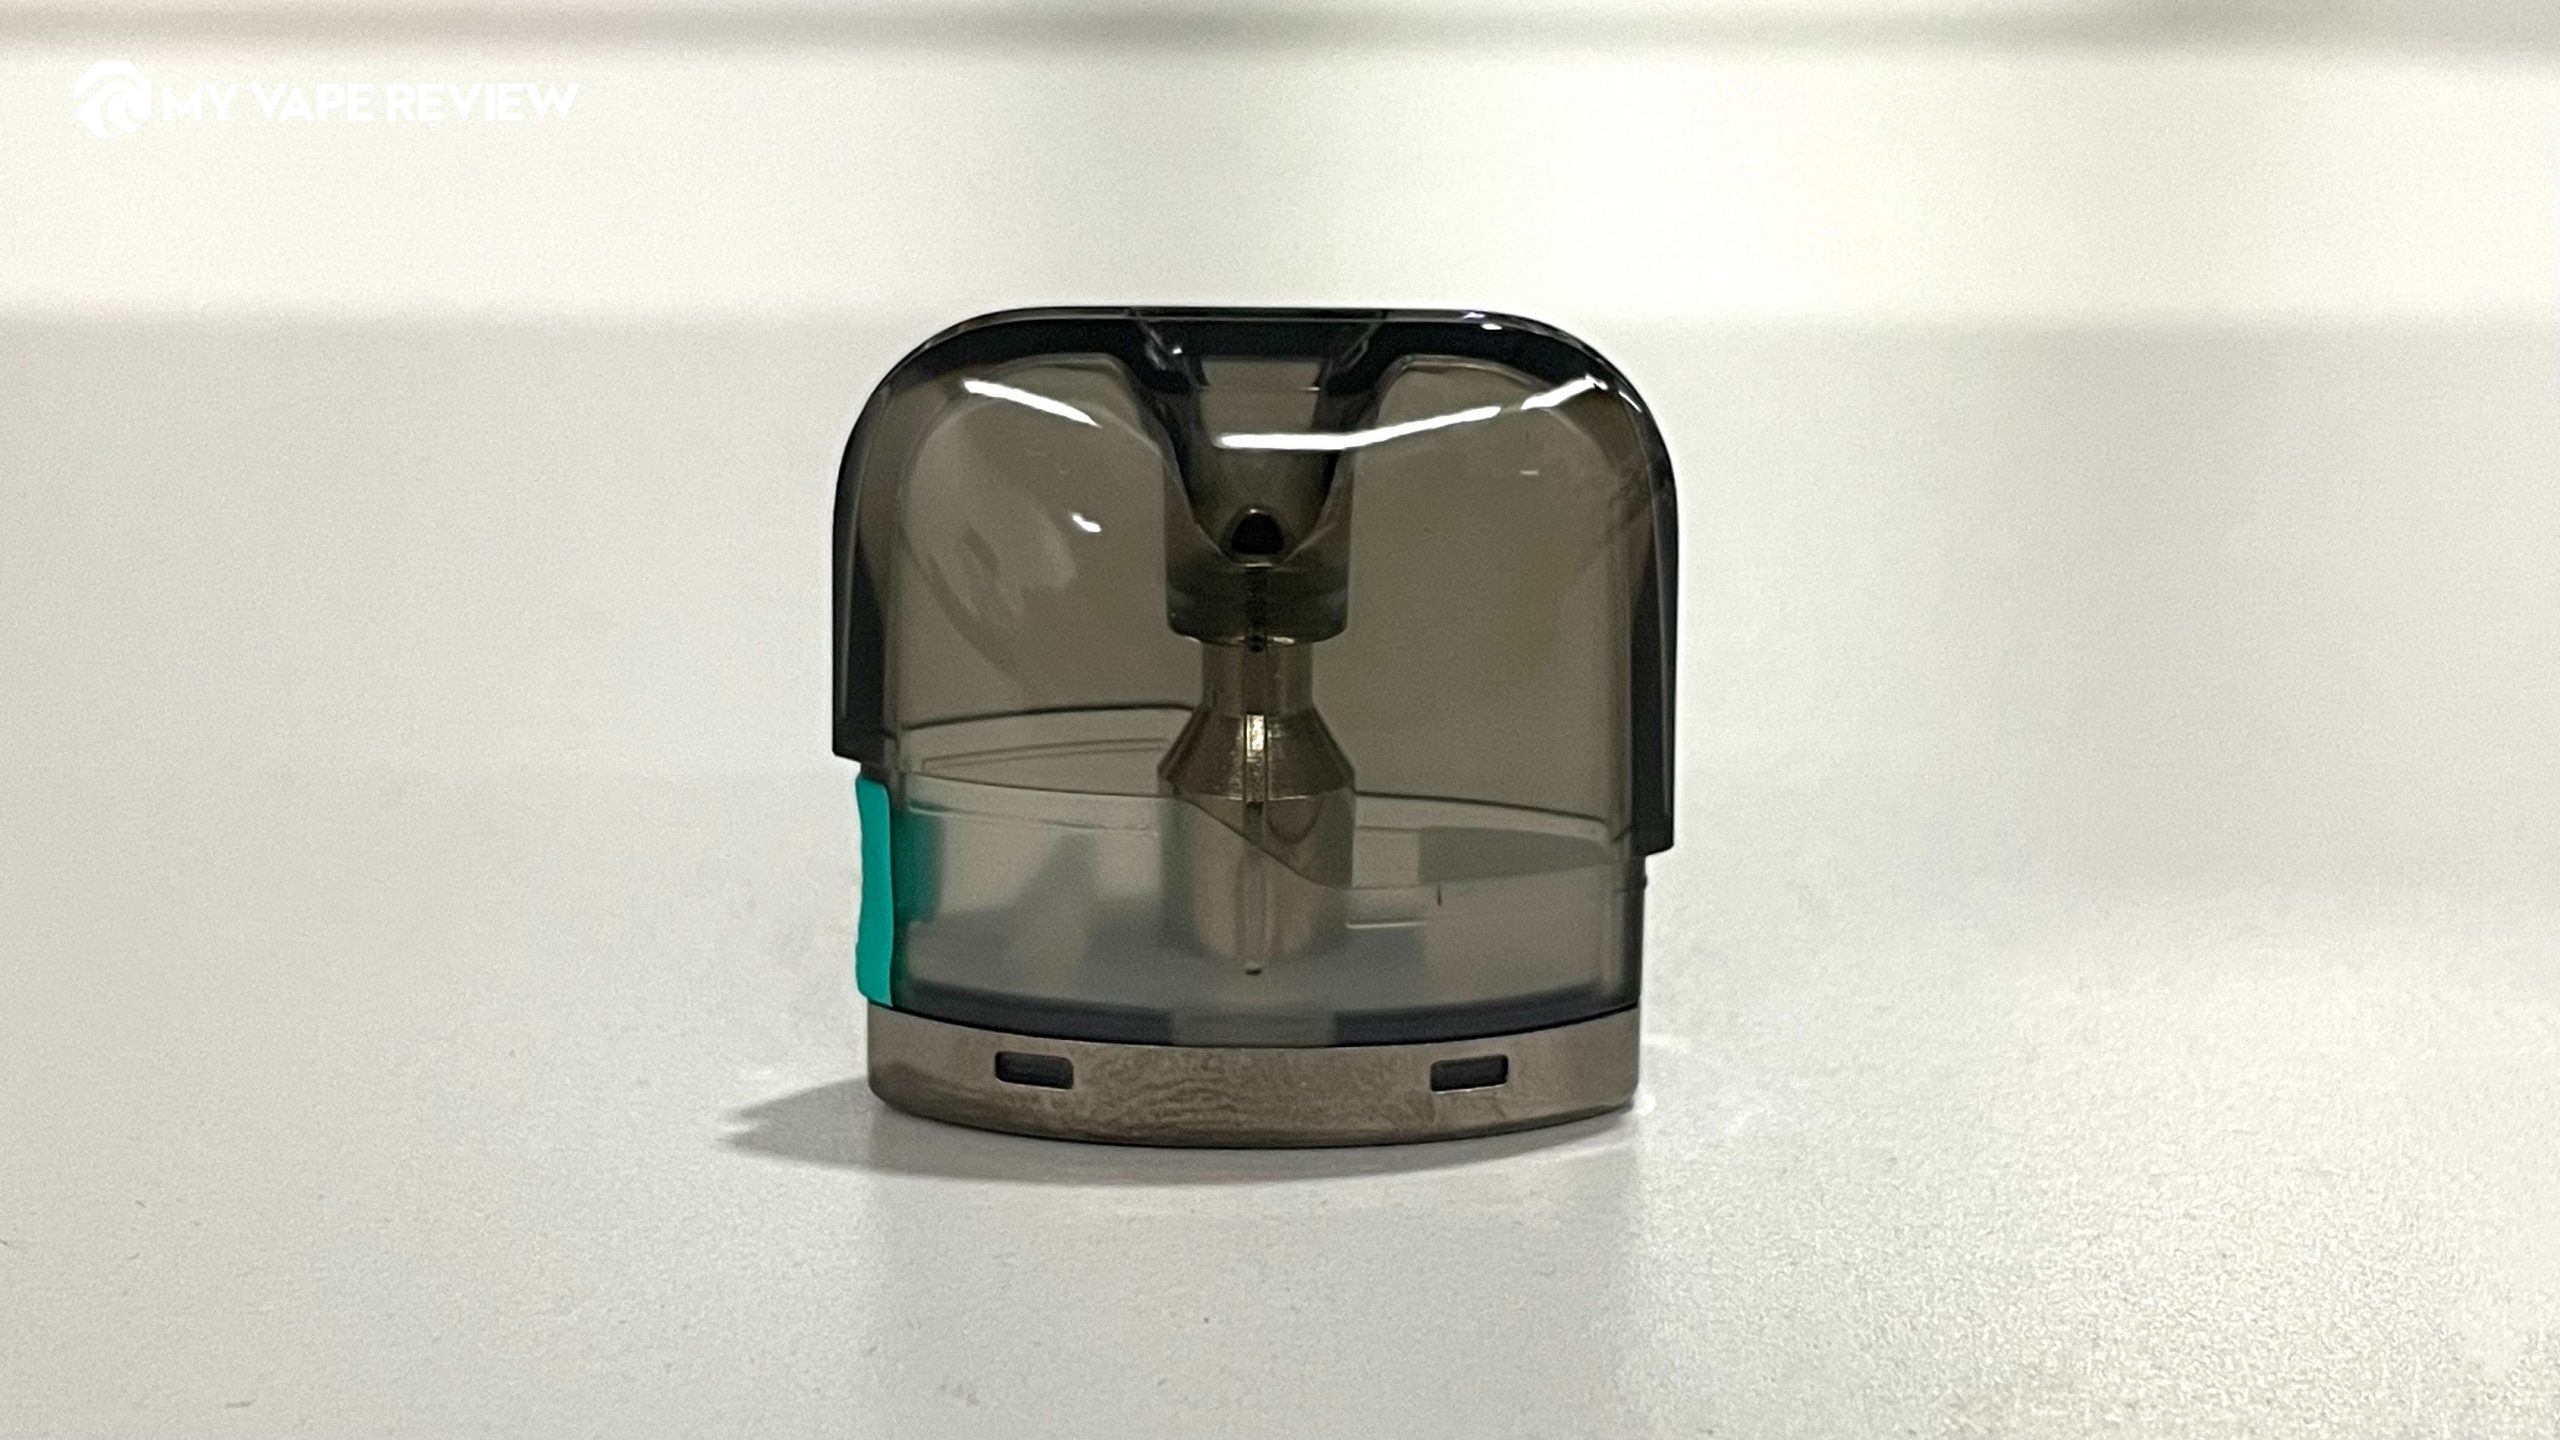 Suorin Air Mini pod cartridge